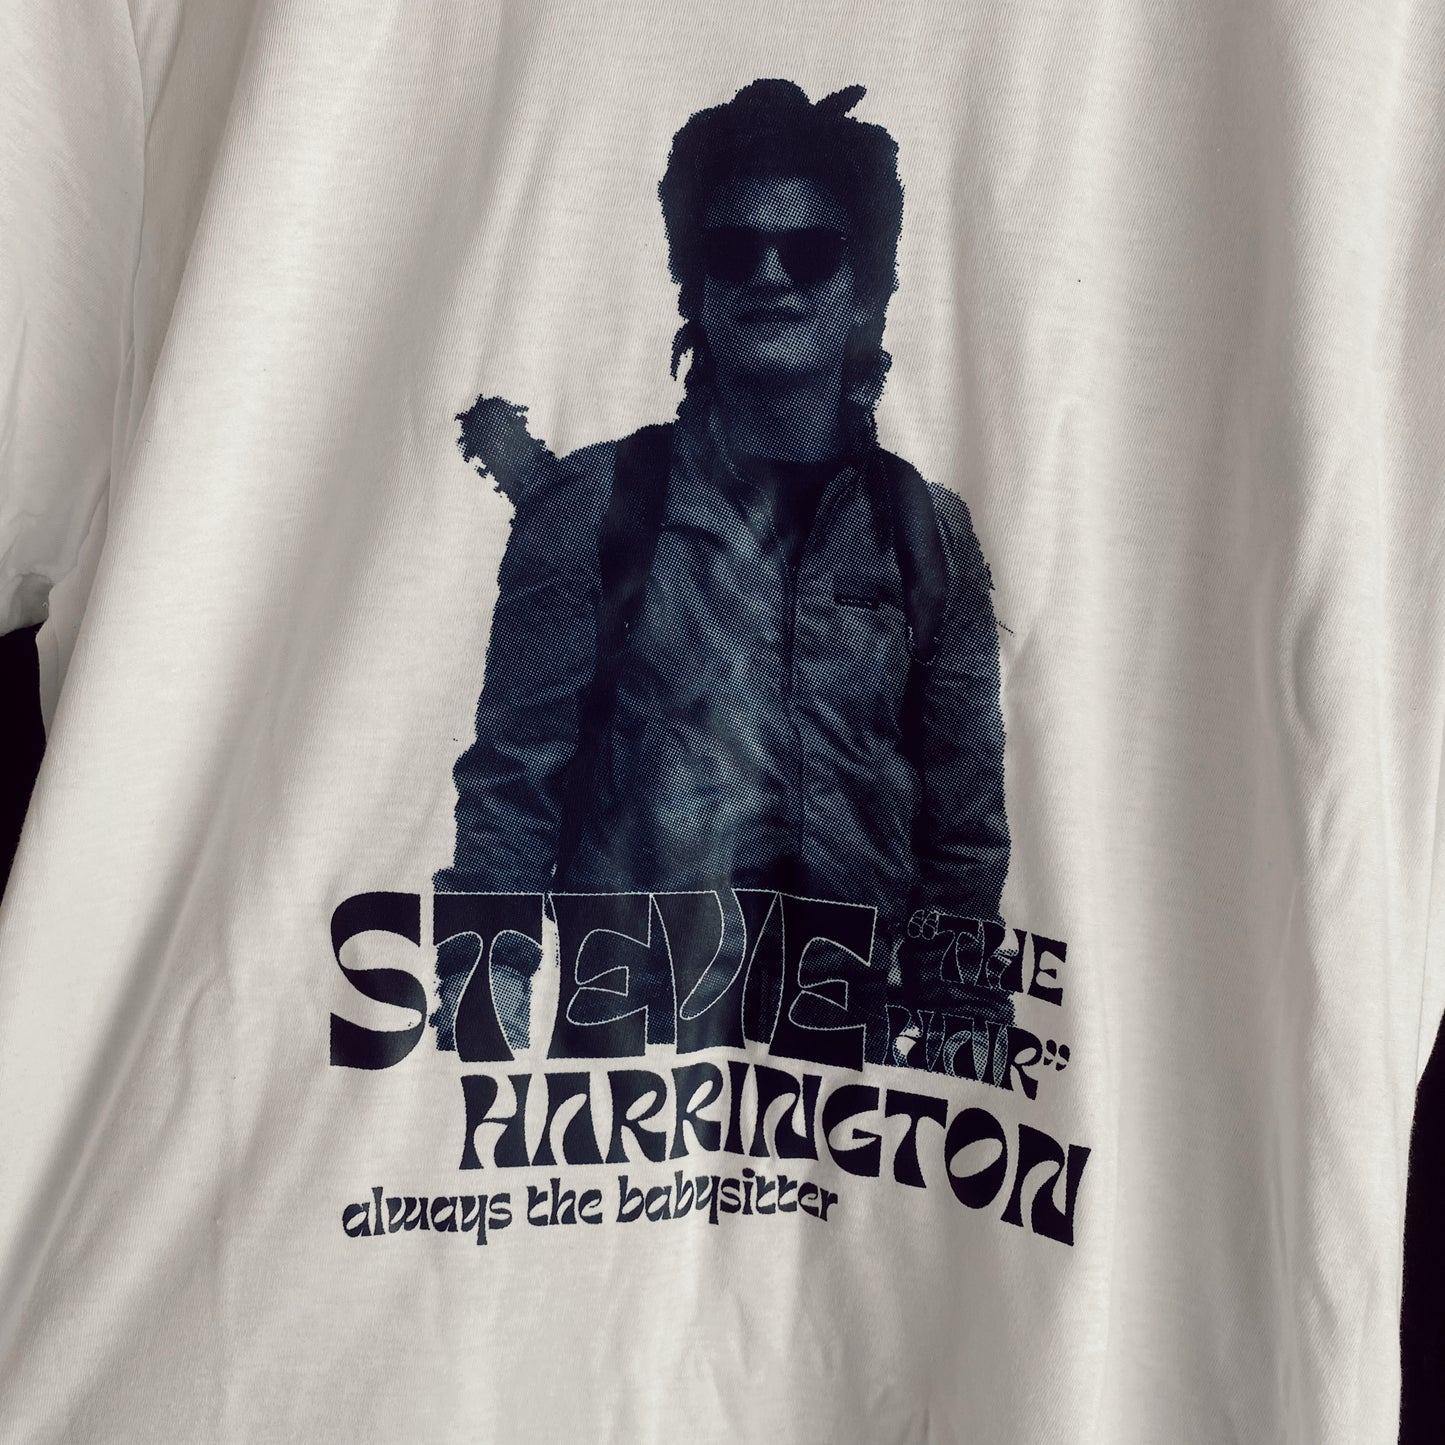 Steve “The Hair” Harrington Tee